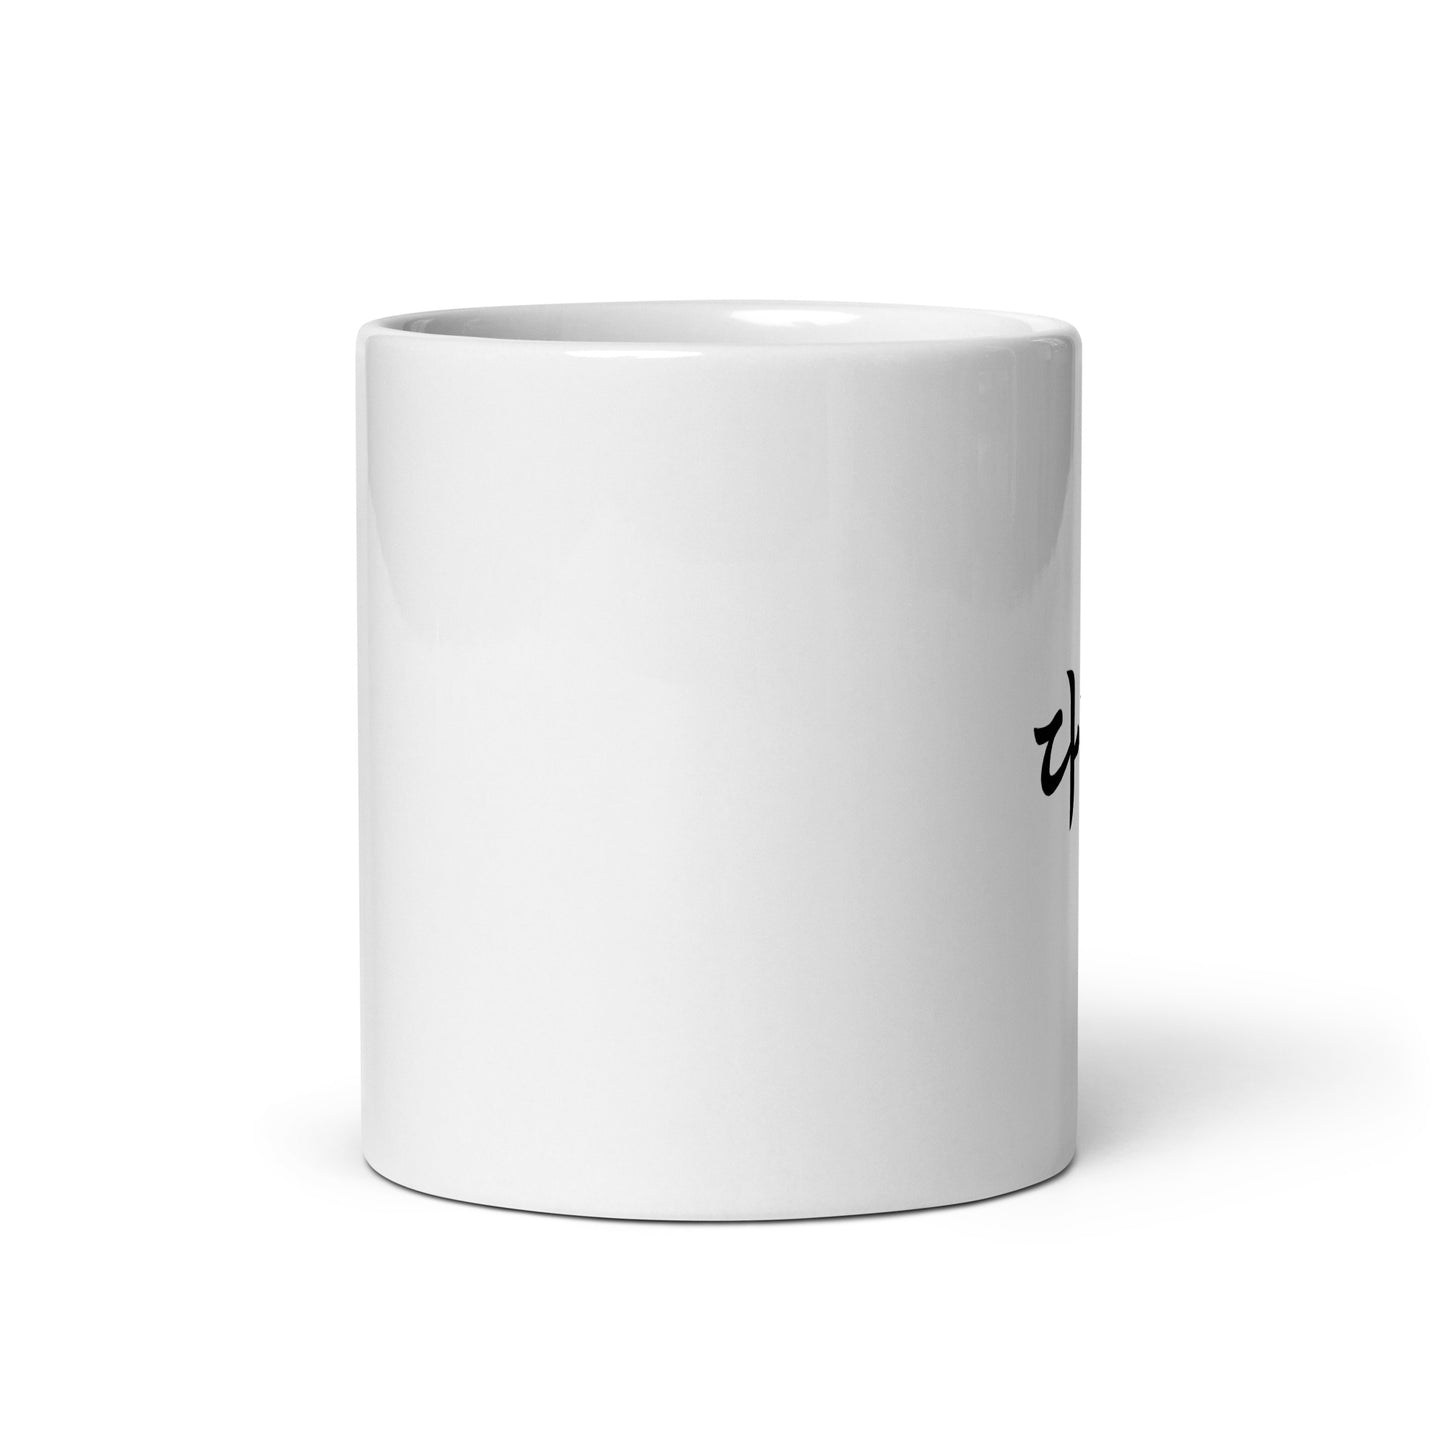 Daniel in Hangul Custom Name Gift Ceramic Mug